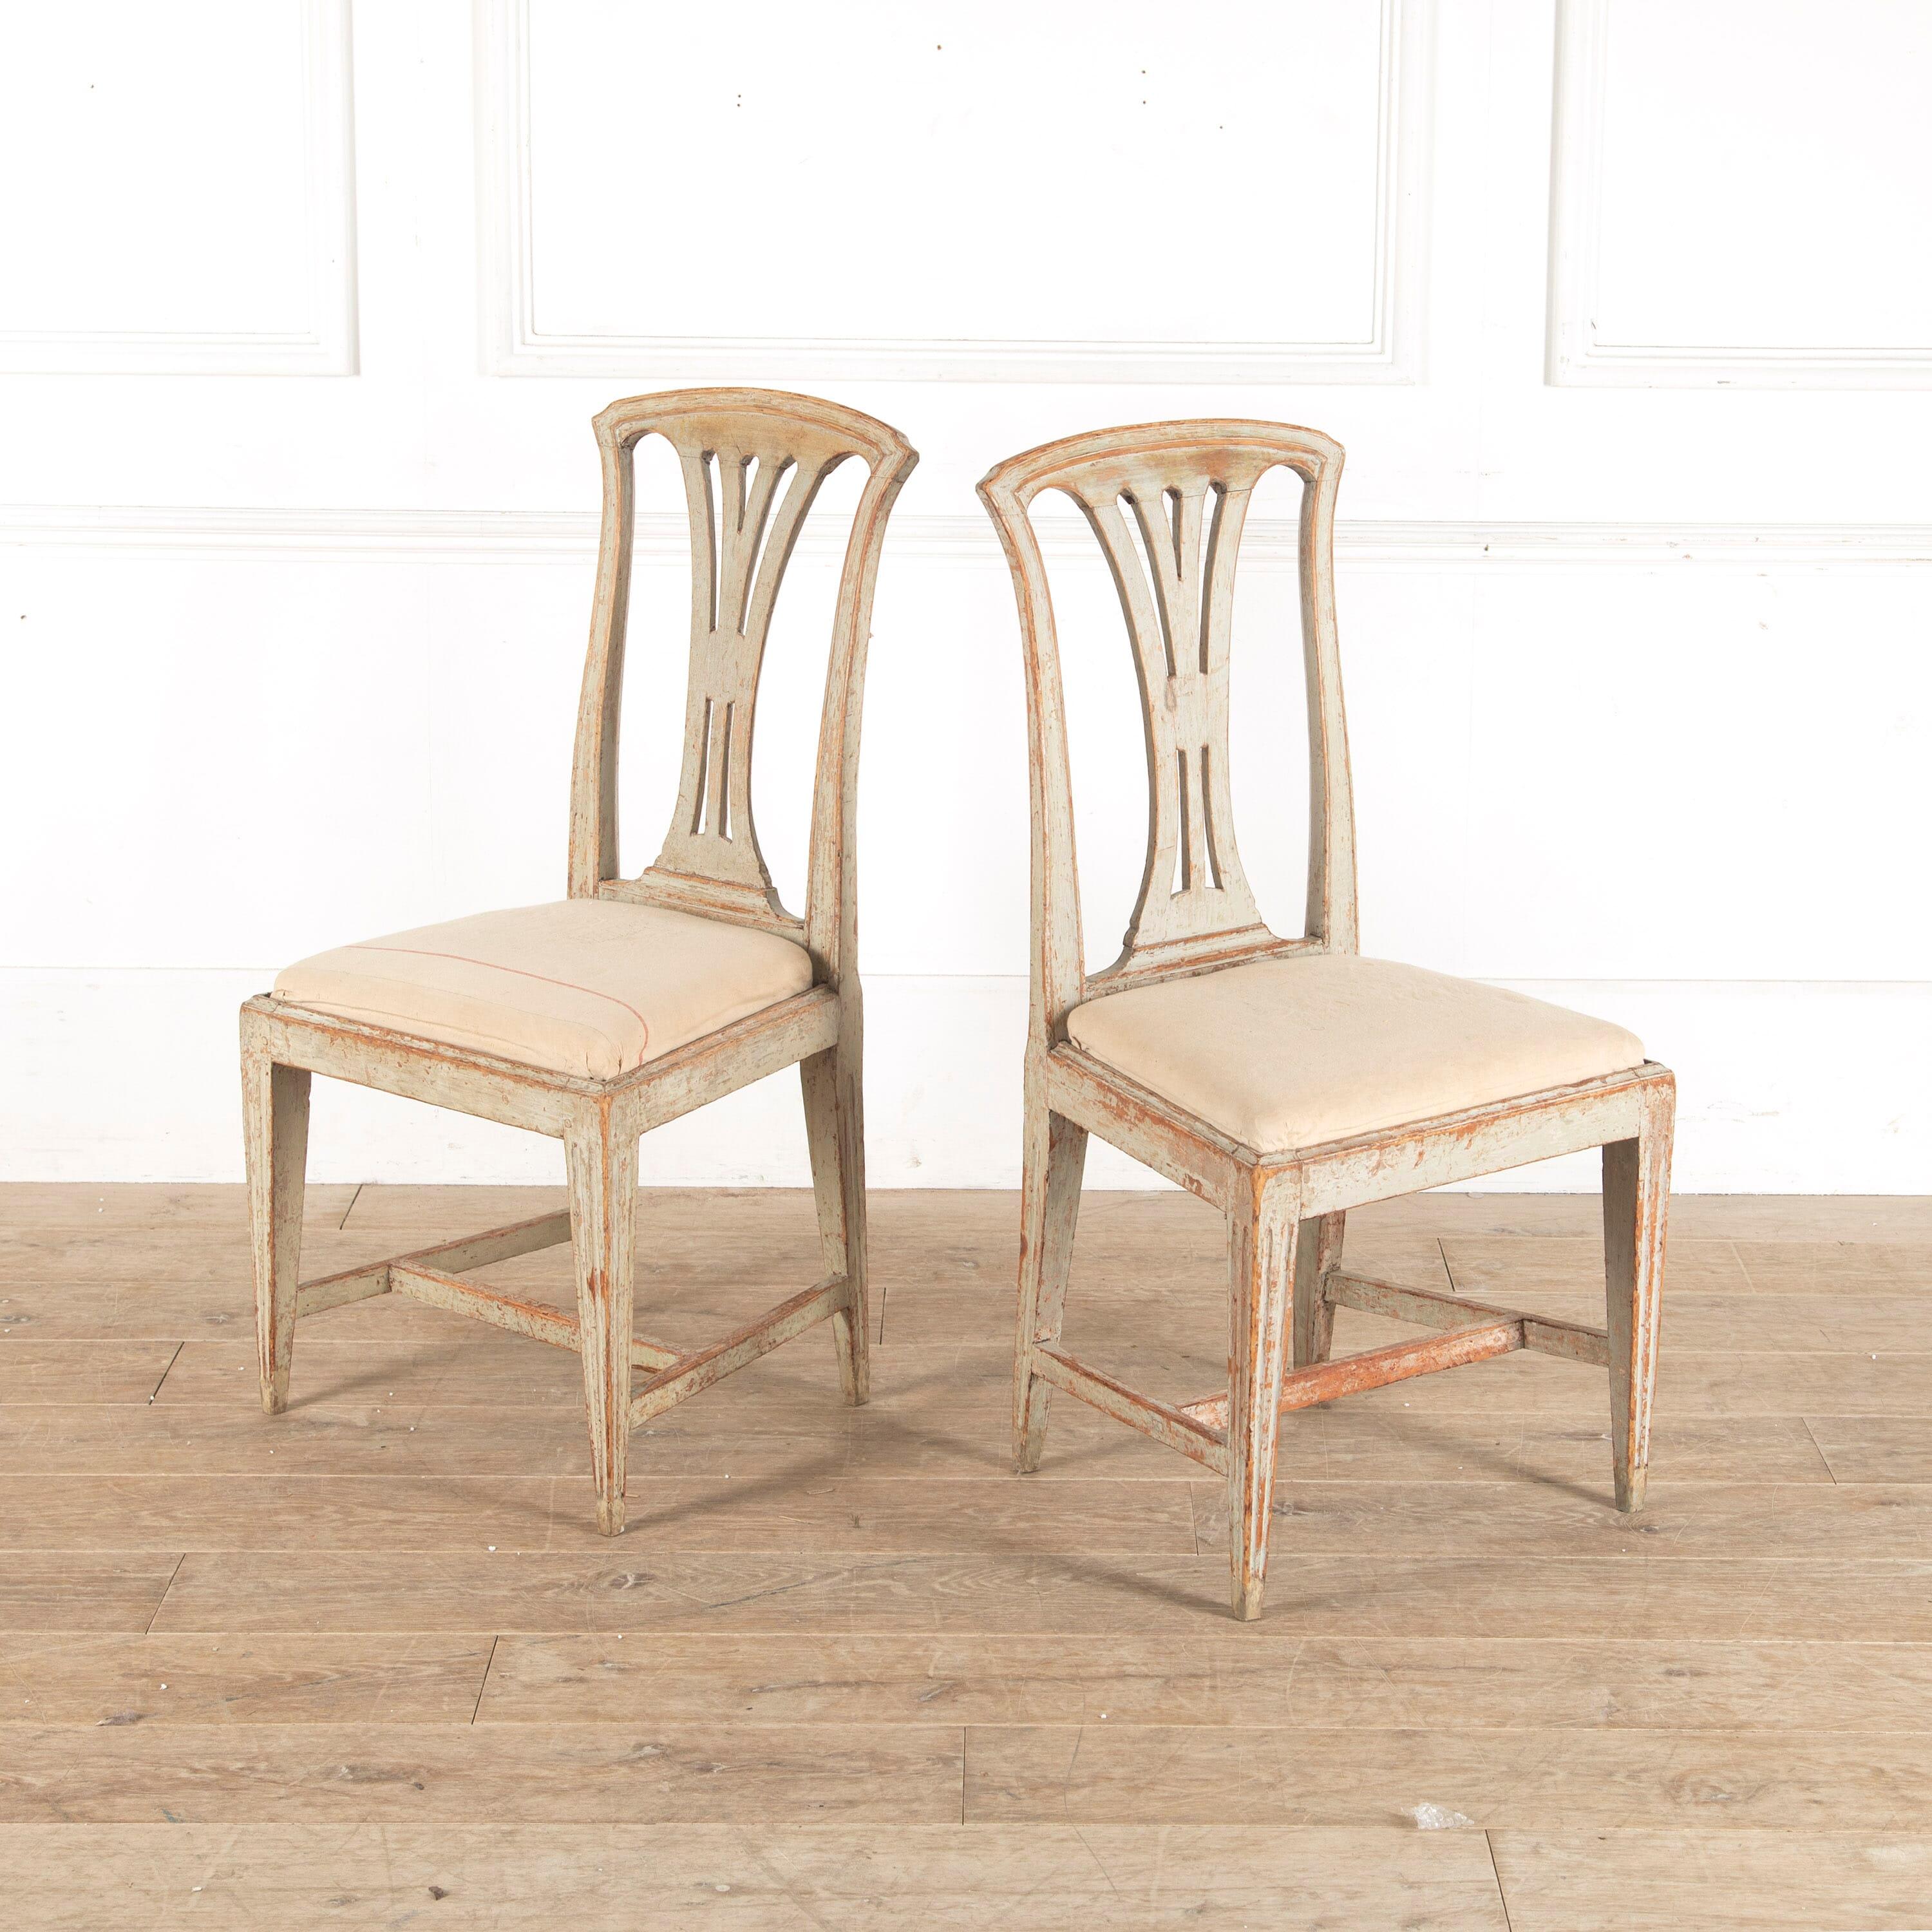 Ein Paar Stühle des Stockholmer Handwerksmeisters Johan Erik Hoglander (1750-1813). Er gilt als einer der besten schwedischen Stuhlmacher des 18. Jahrhunderts. Bis auf die Originalfarbe abgeschabt und für den täglichen Gebrauch stabilisiert.